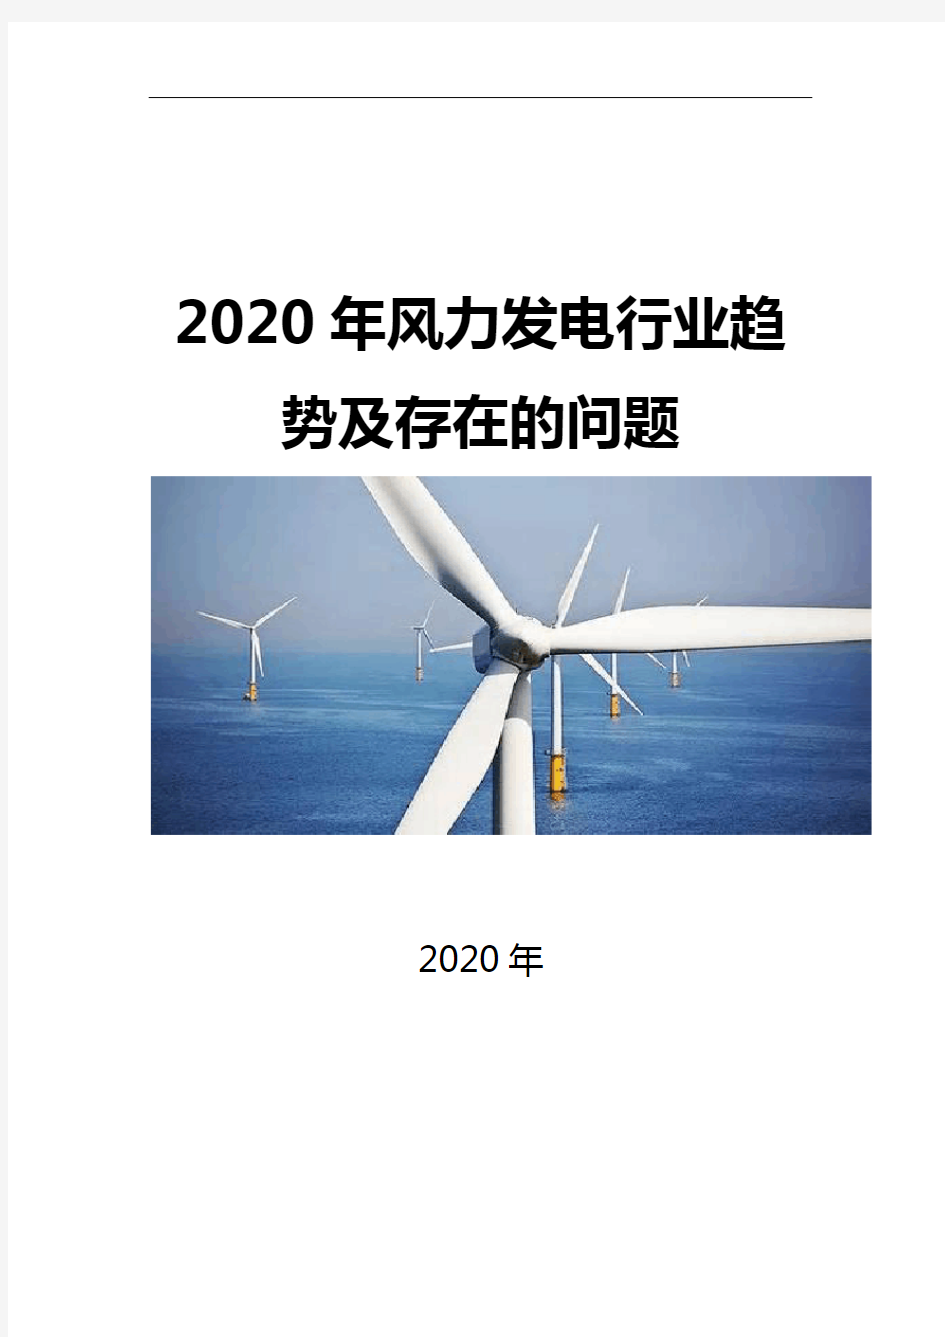 2020风力发电行业趋势及存在的问题